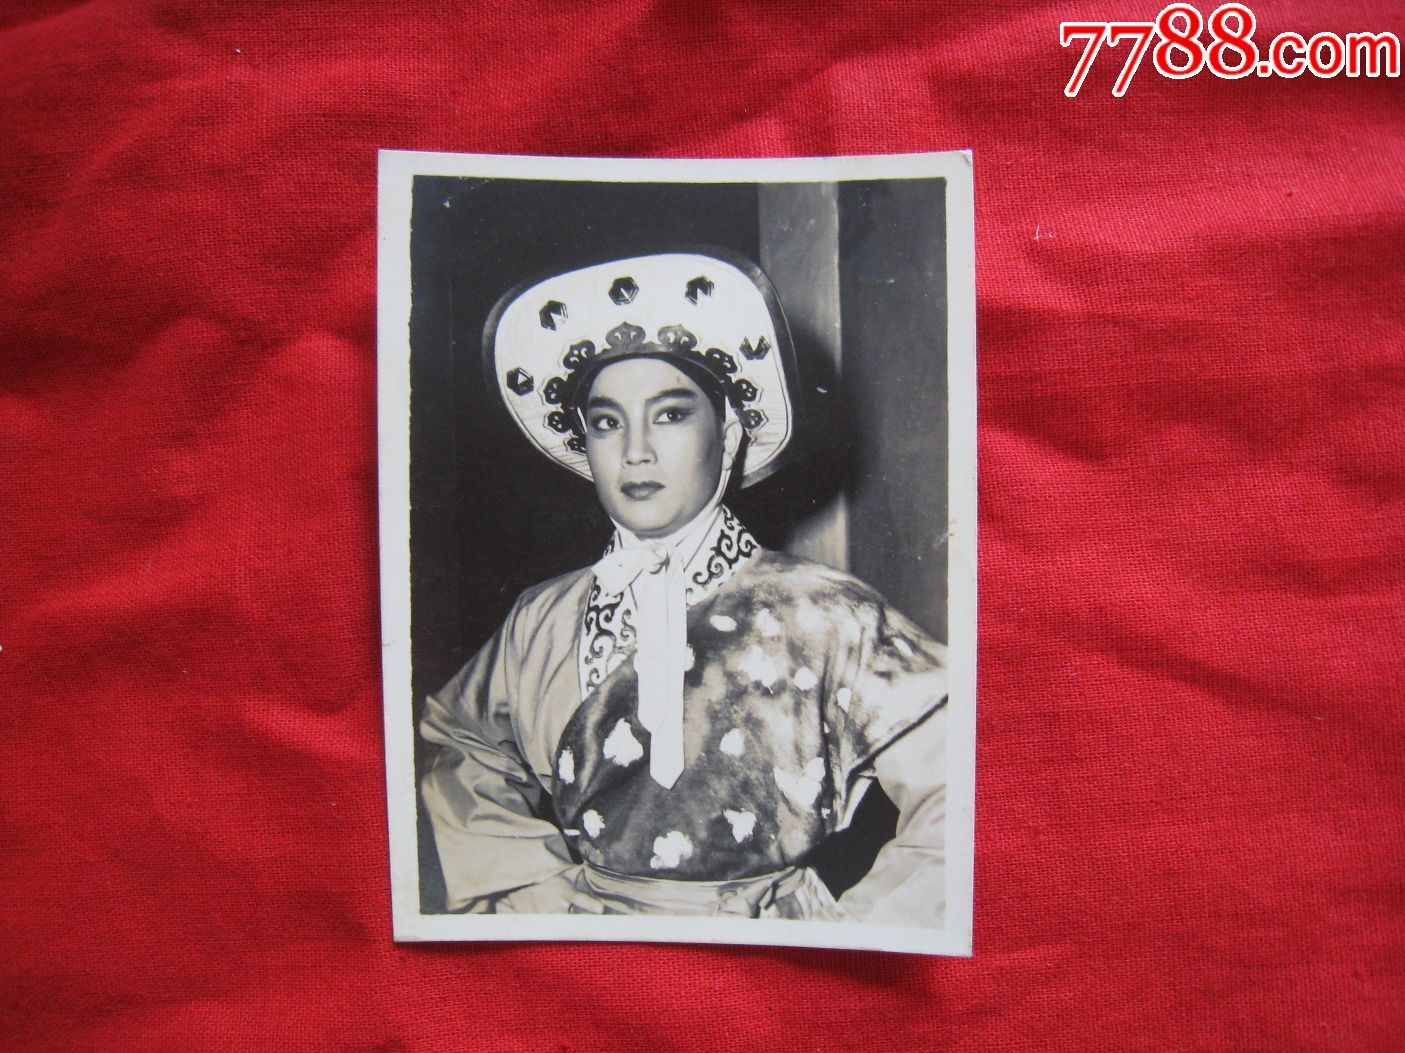 五十年代初戏曲老照片:上海戏曲名家上海越剧团演出(陈少春)